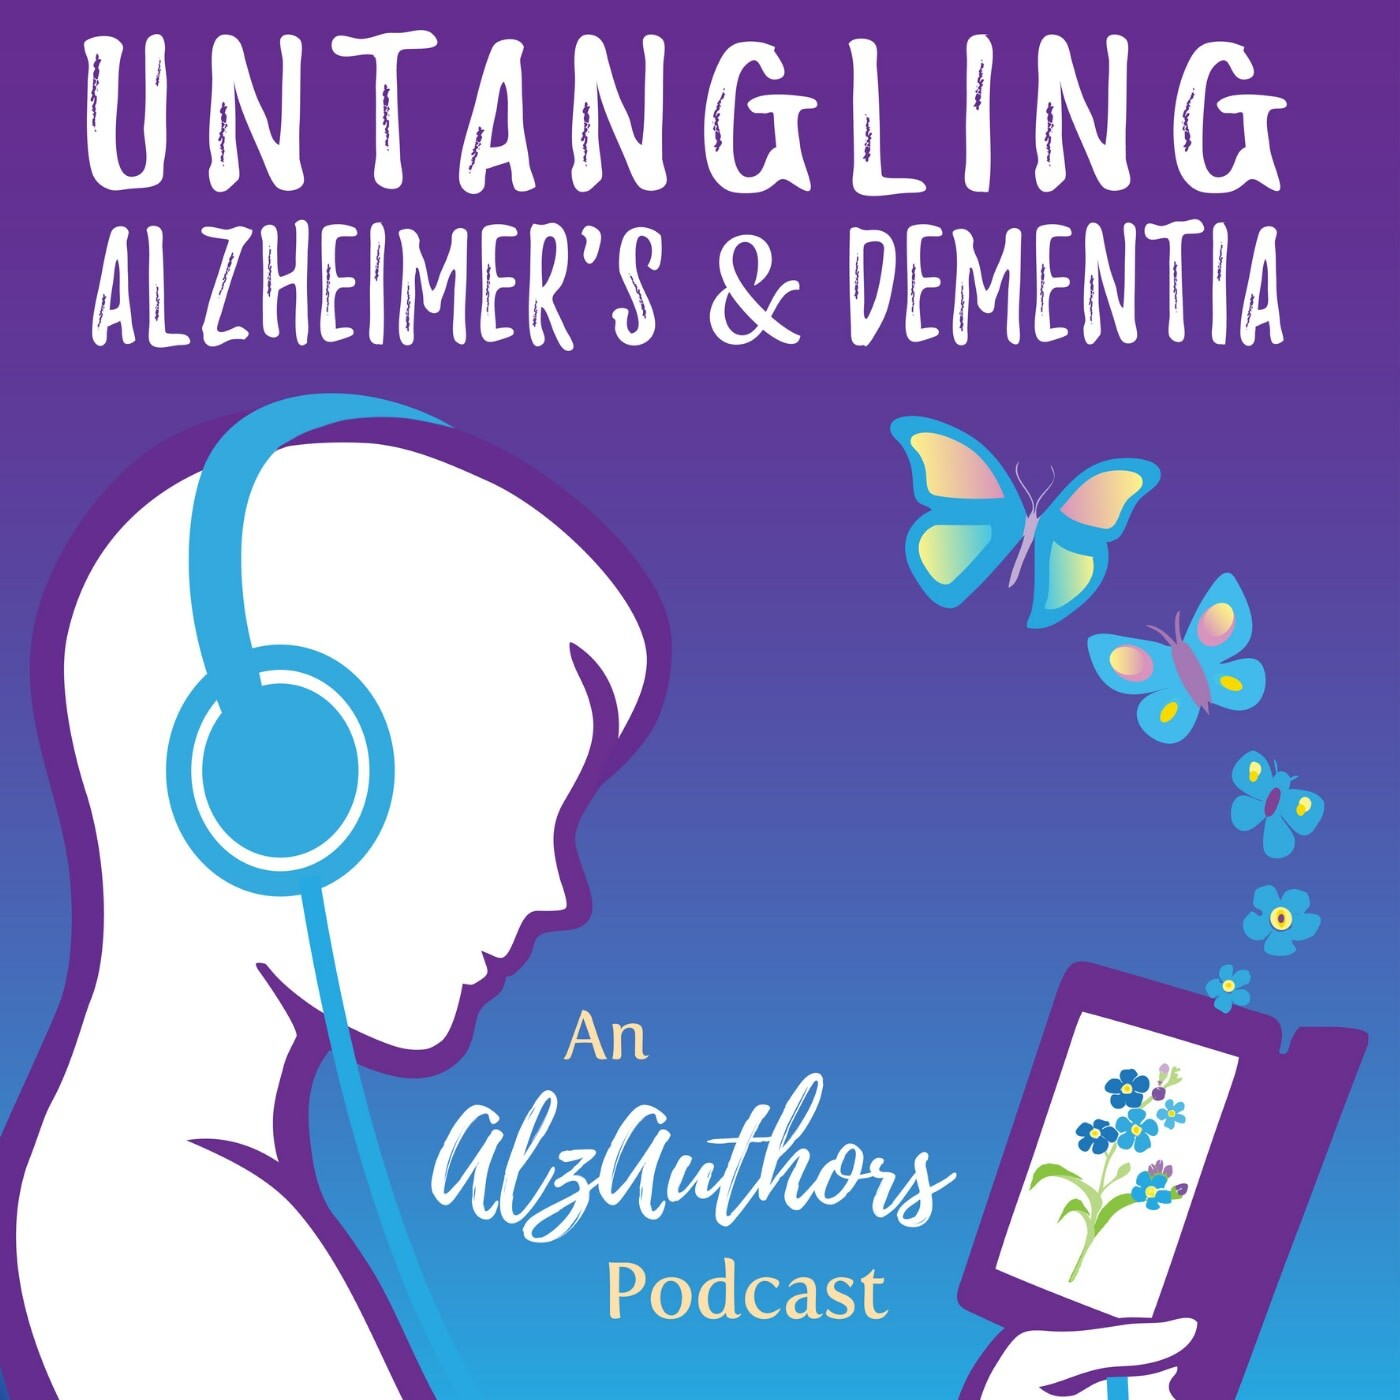 Introducing Untangling Alzheimer's & Dementia, An AlzAuthors Podcast